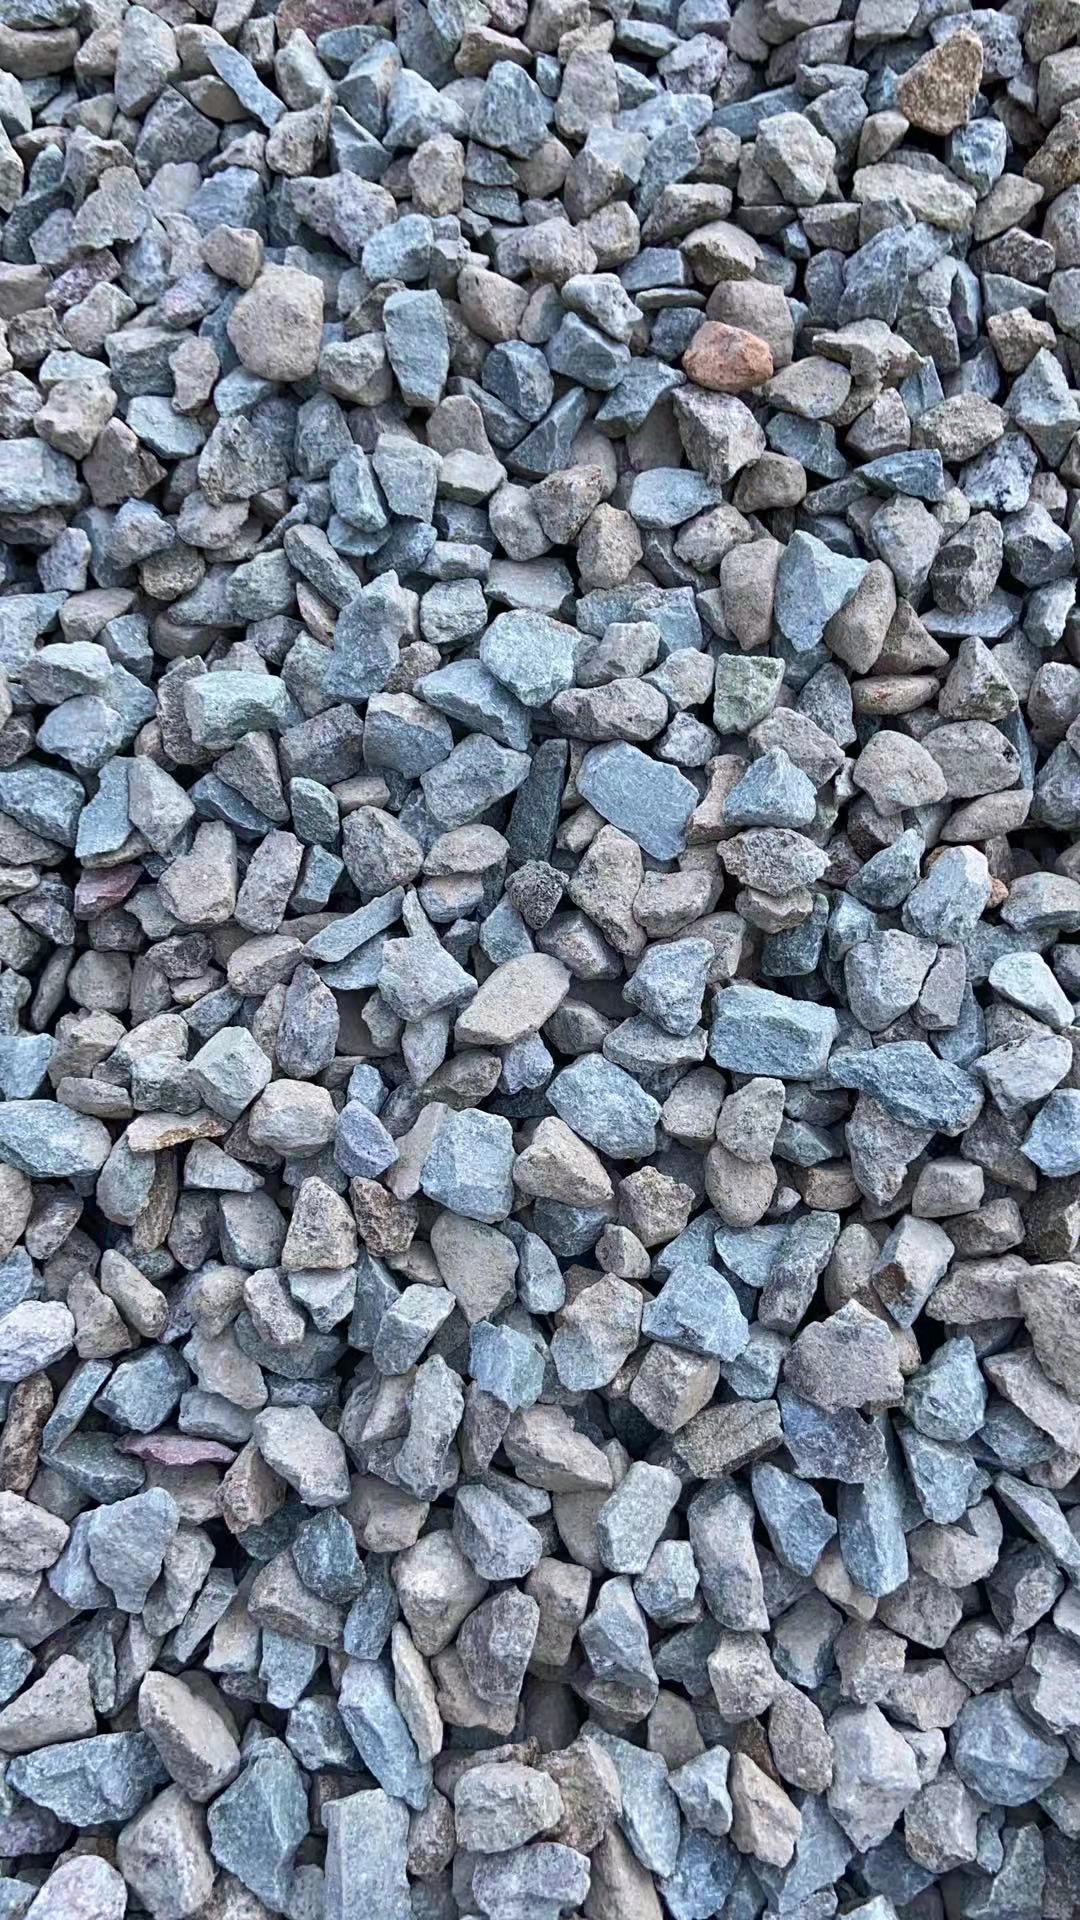 漳州砂石骨料多少钱,建筑用砂石厂家